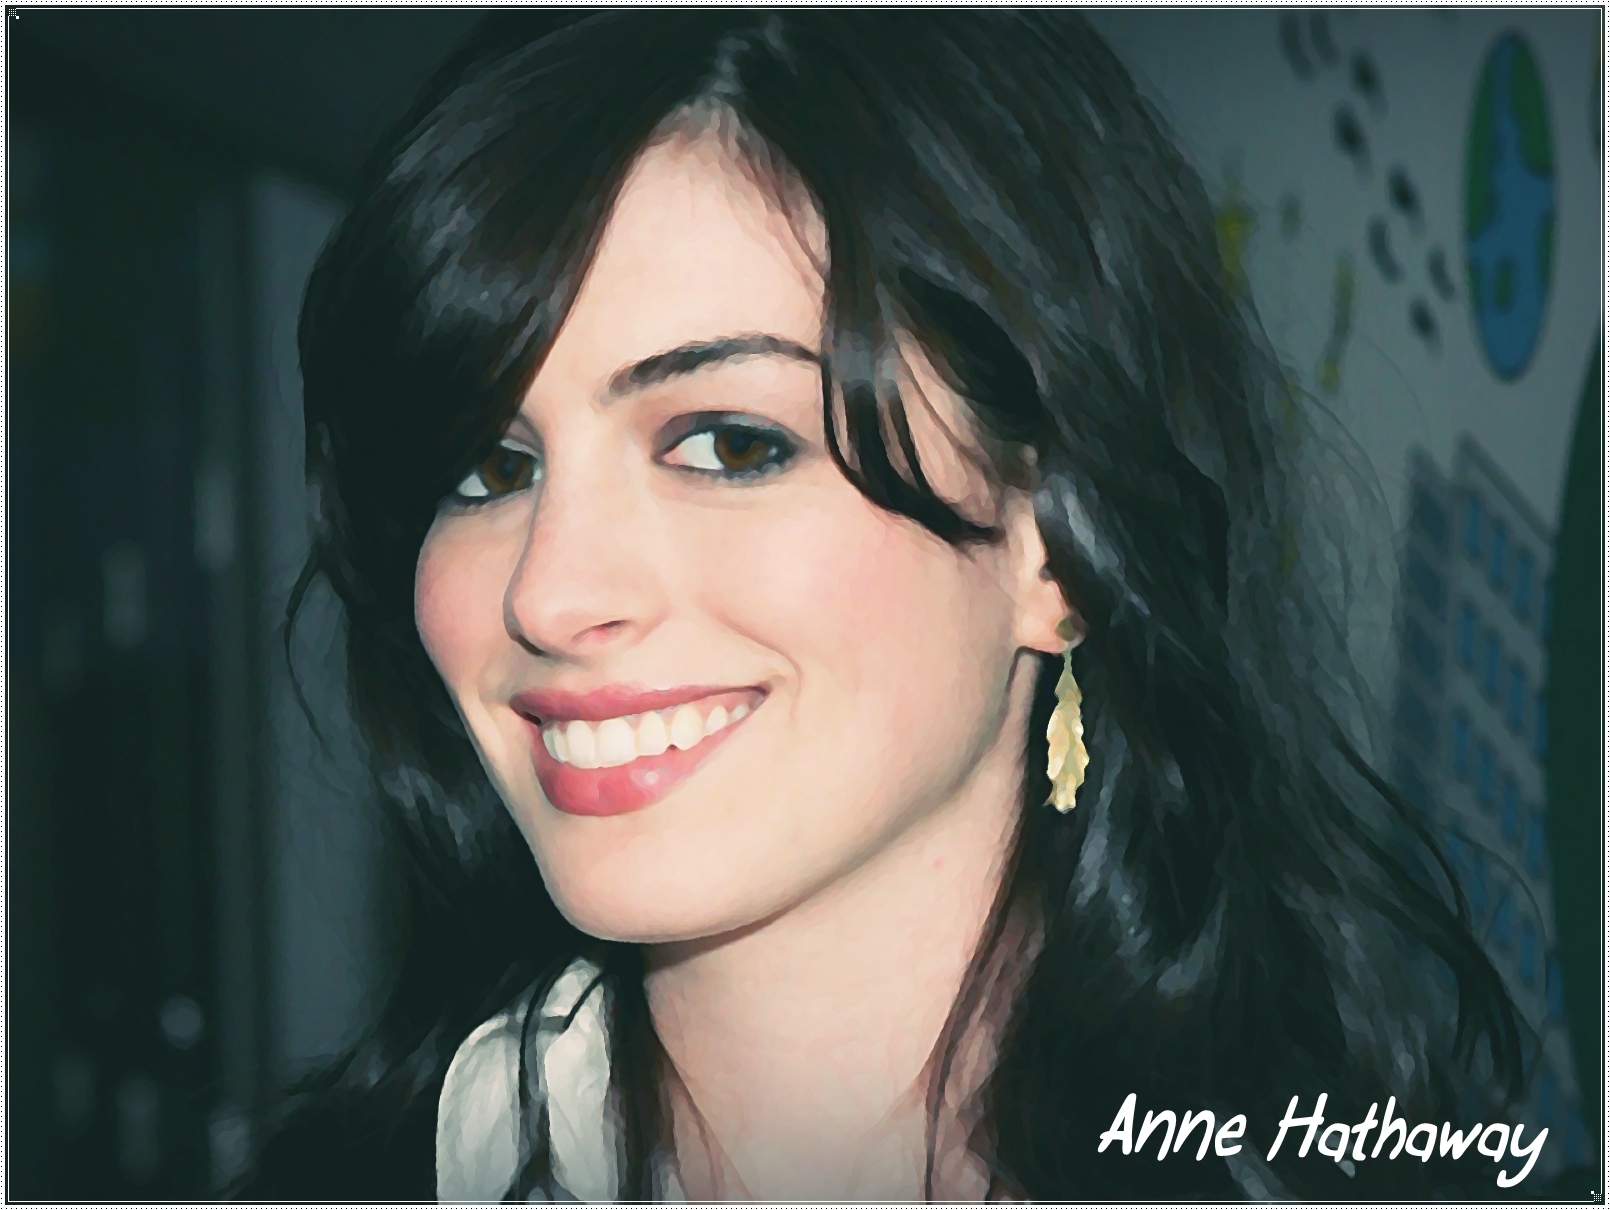 Anne-Hathaway-anne-hathaway-12478560-1610-1210